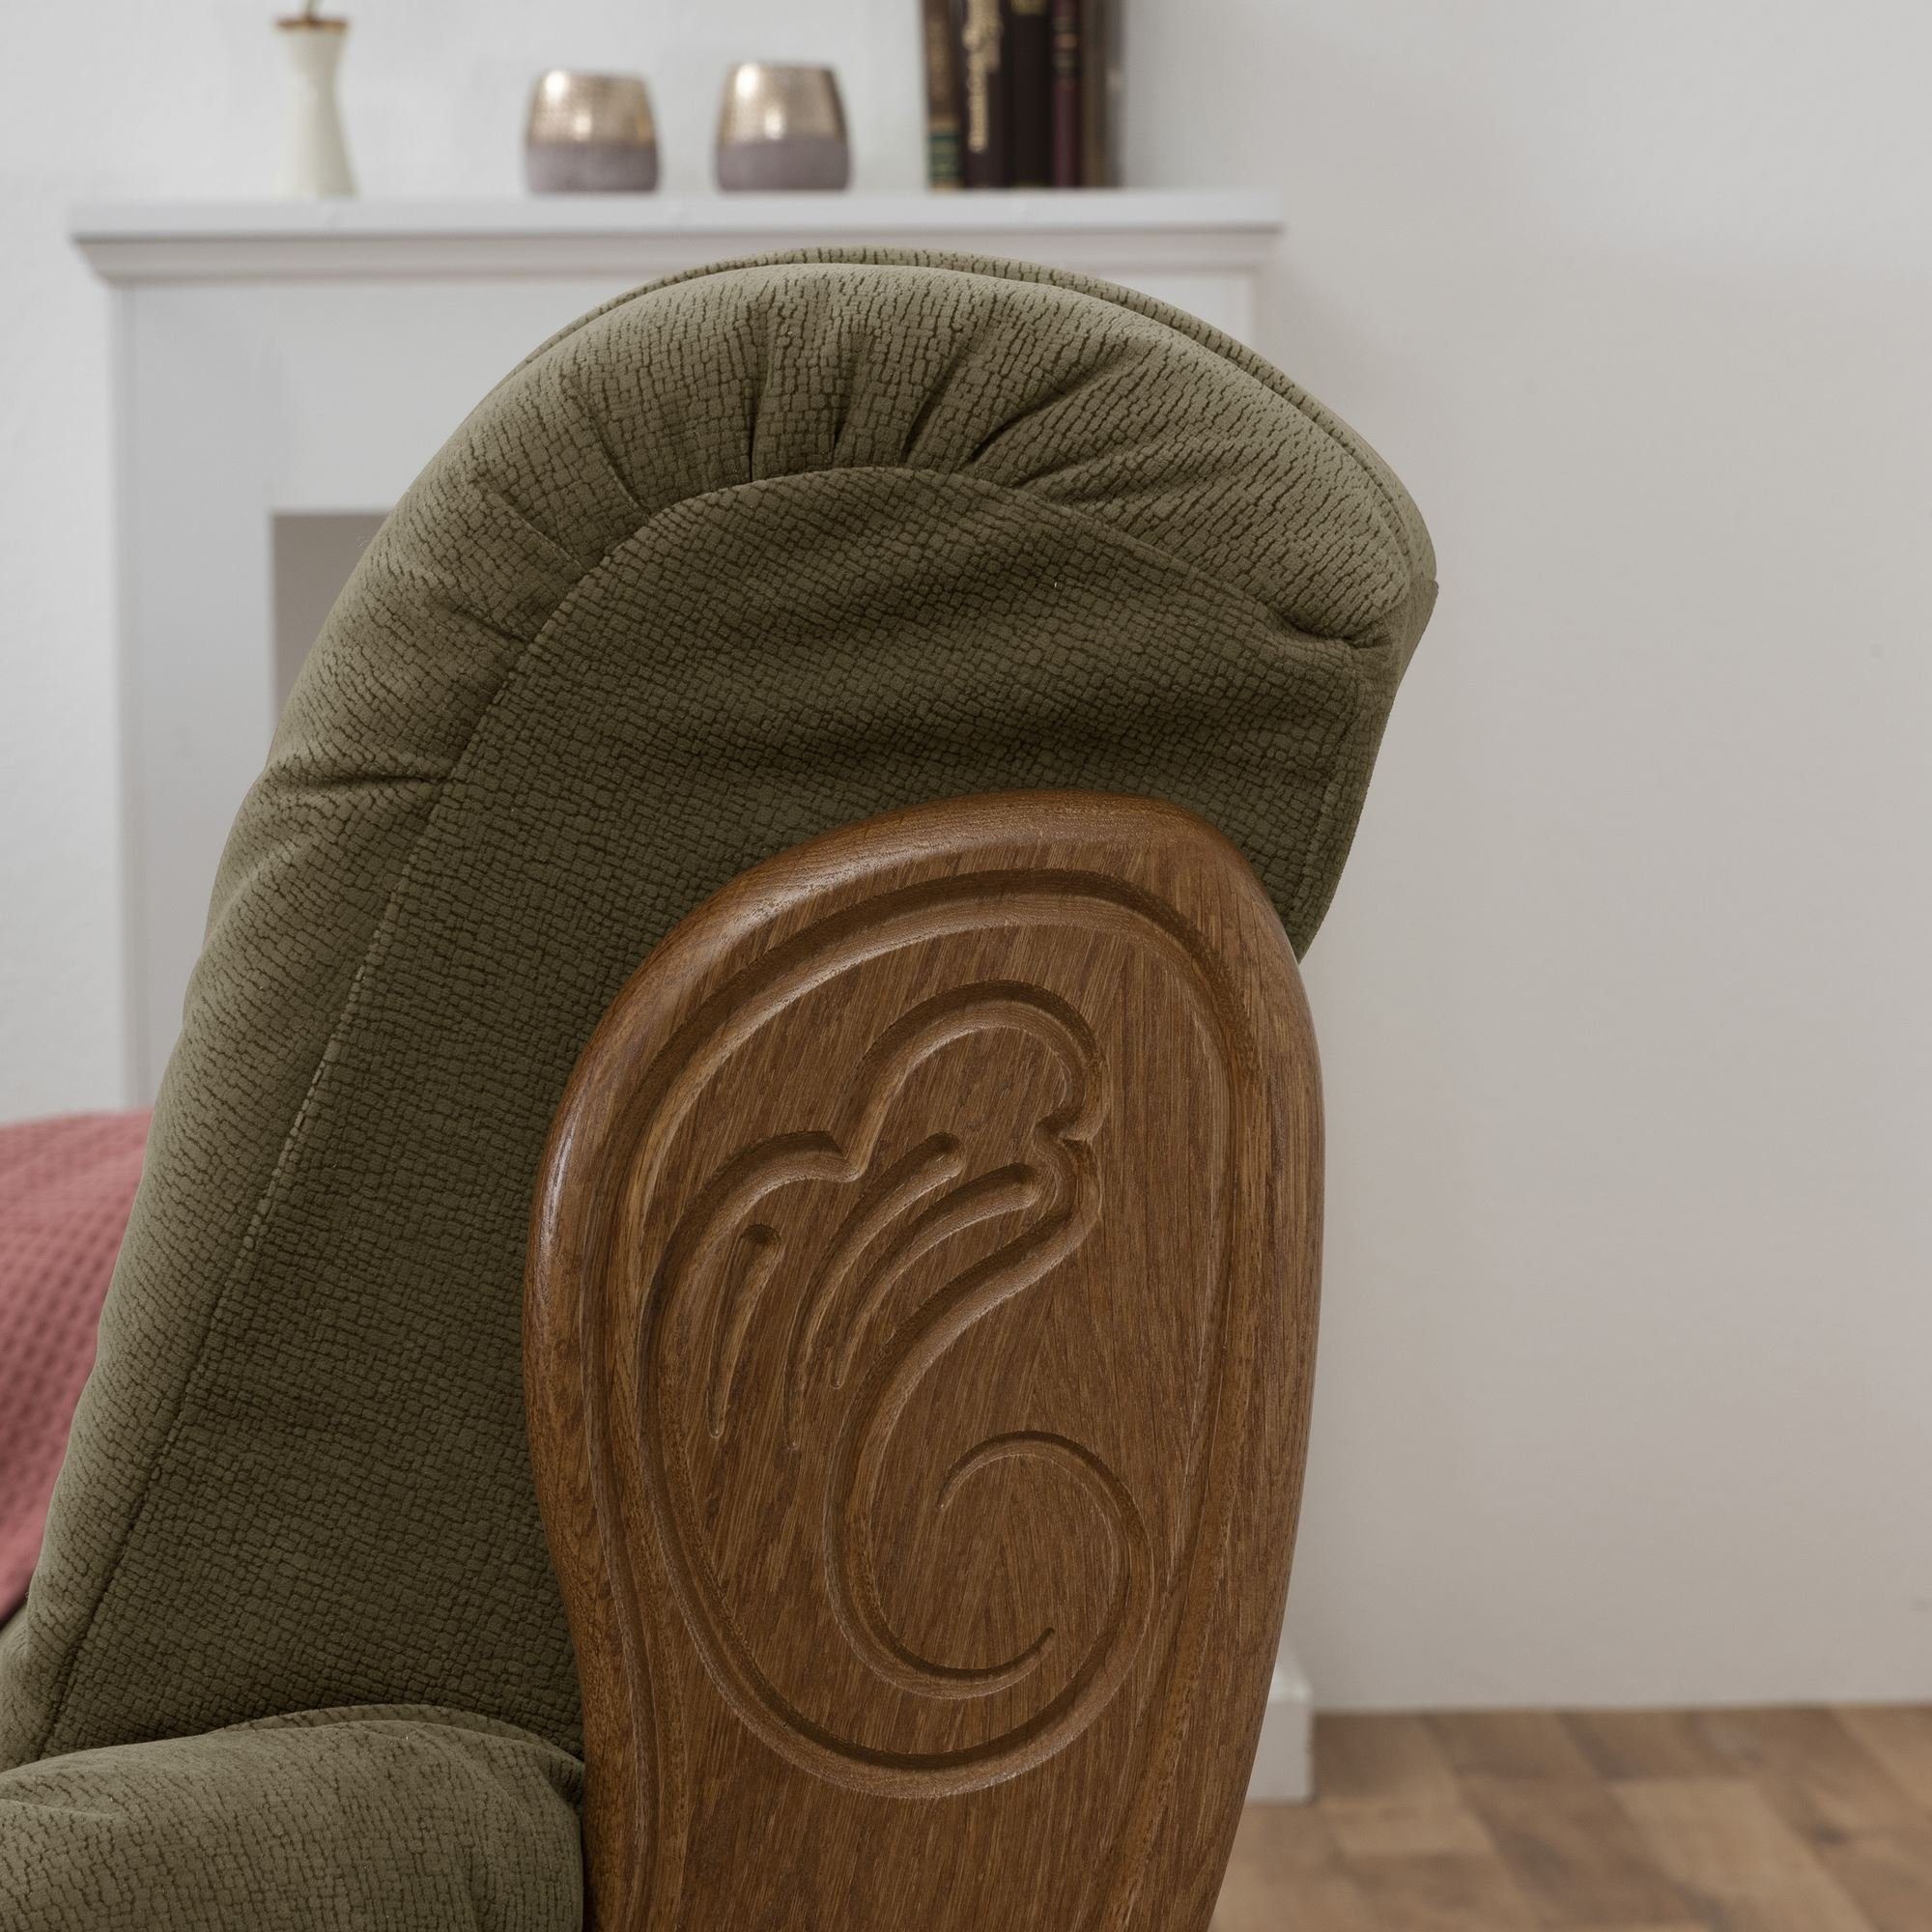 Versand 58 Sitz Sofa Katlin Kessel hochwertig rustik, Flockstoff inkl. Bezug 1 Kostenlosem Teile, verarbeitet,bequemer Sofa aufm Eiche 3-Sitzer Sparpreis